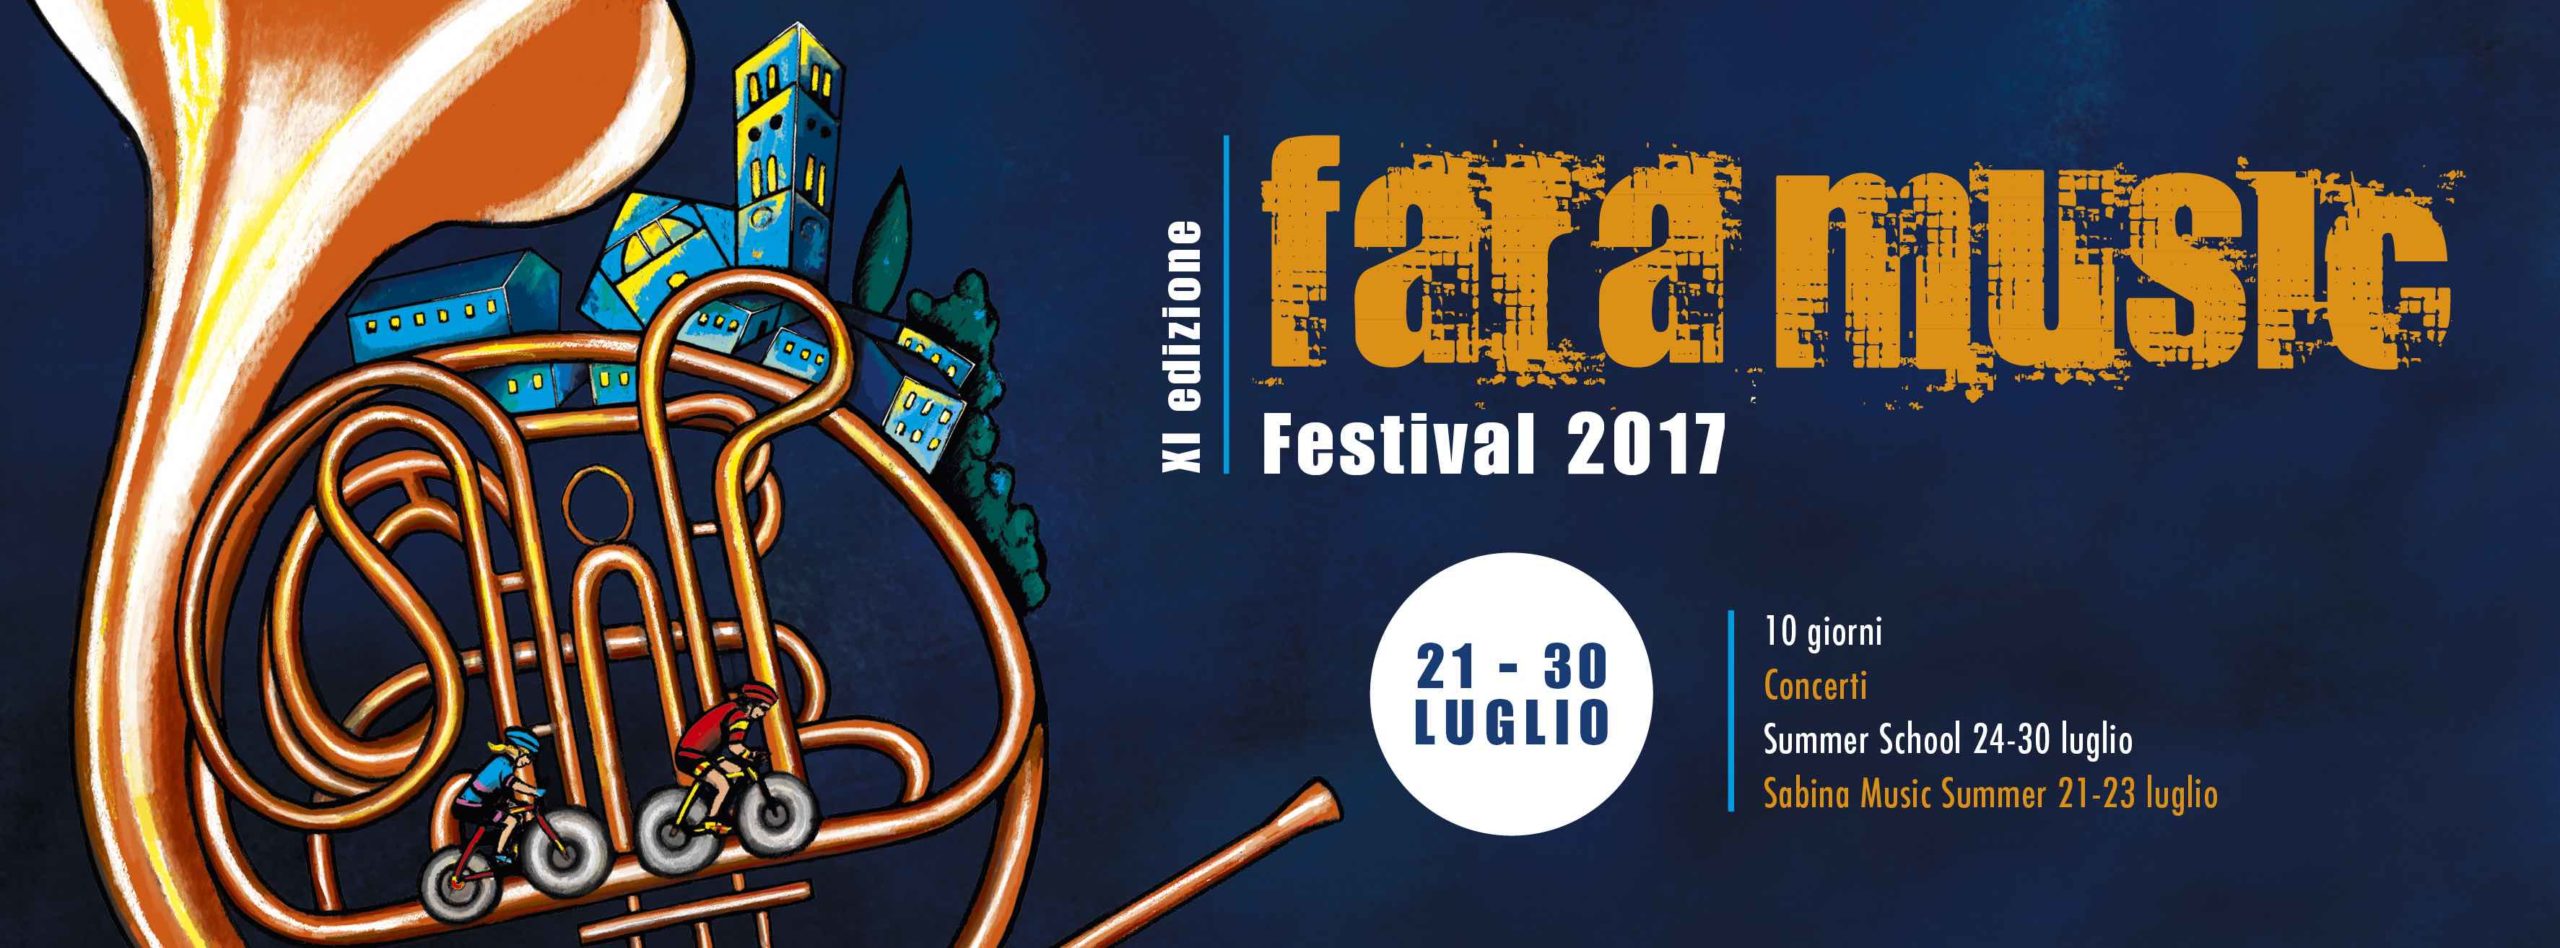 Conferenza Stampa Fara Music Festival 2017